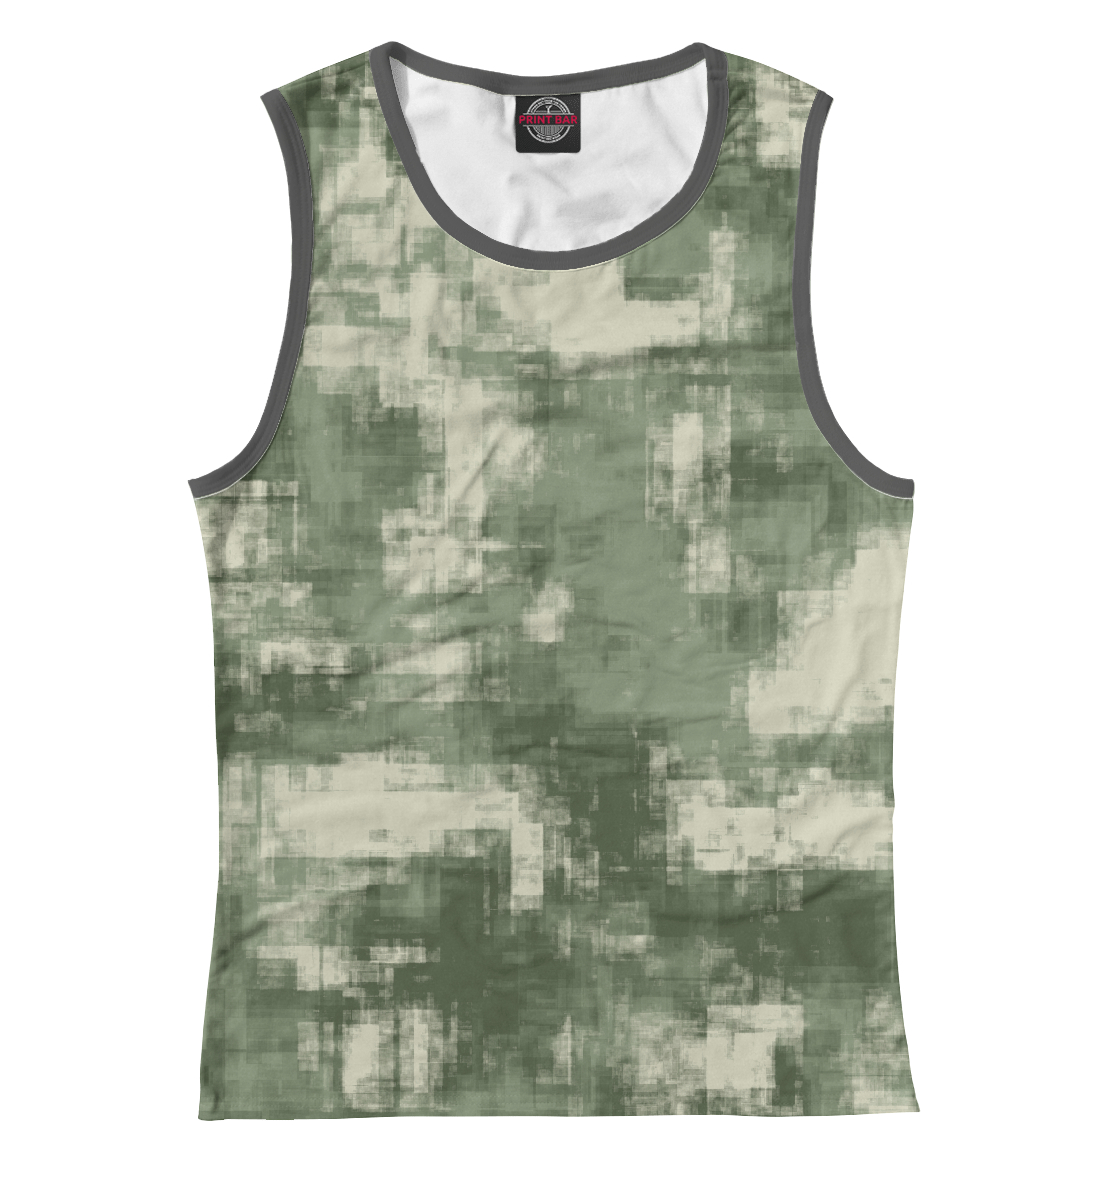 Детская Майка Военный камуфляж- одежда для мужчин и женщин для девочек, артикул CMF-442561-may-1mp